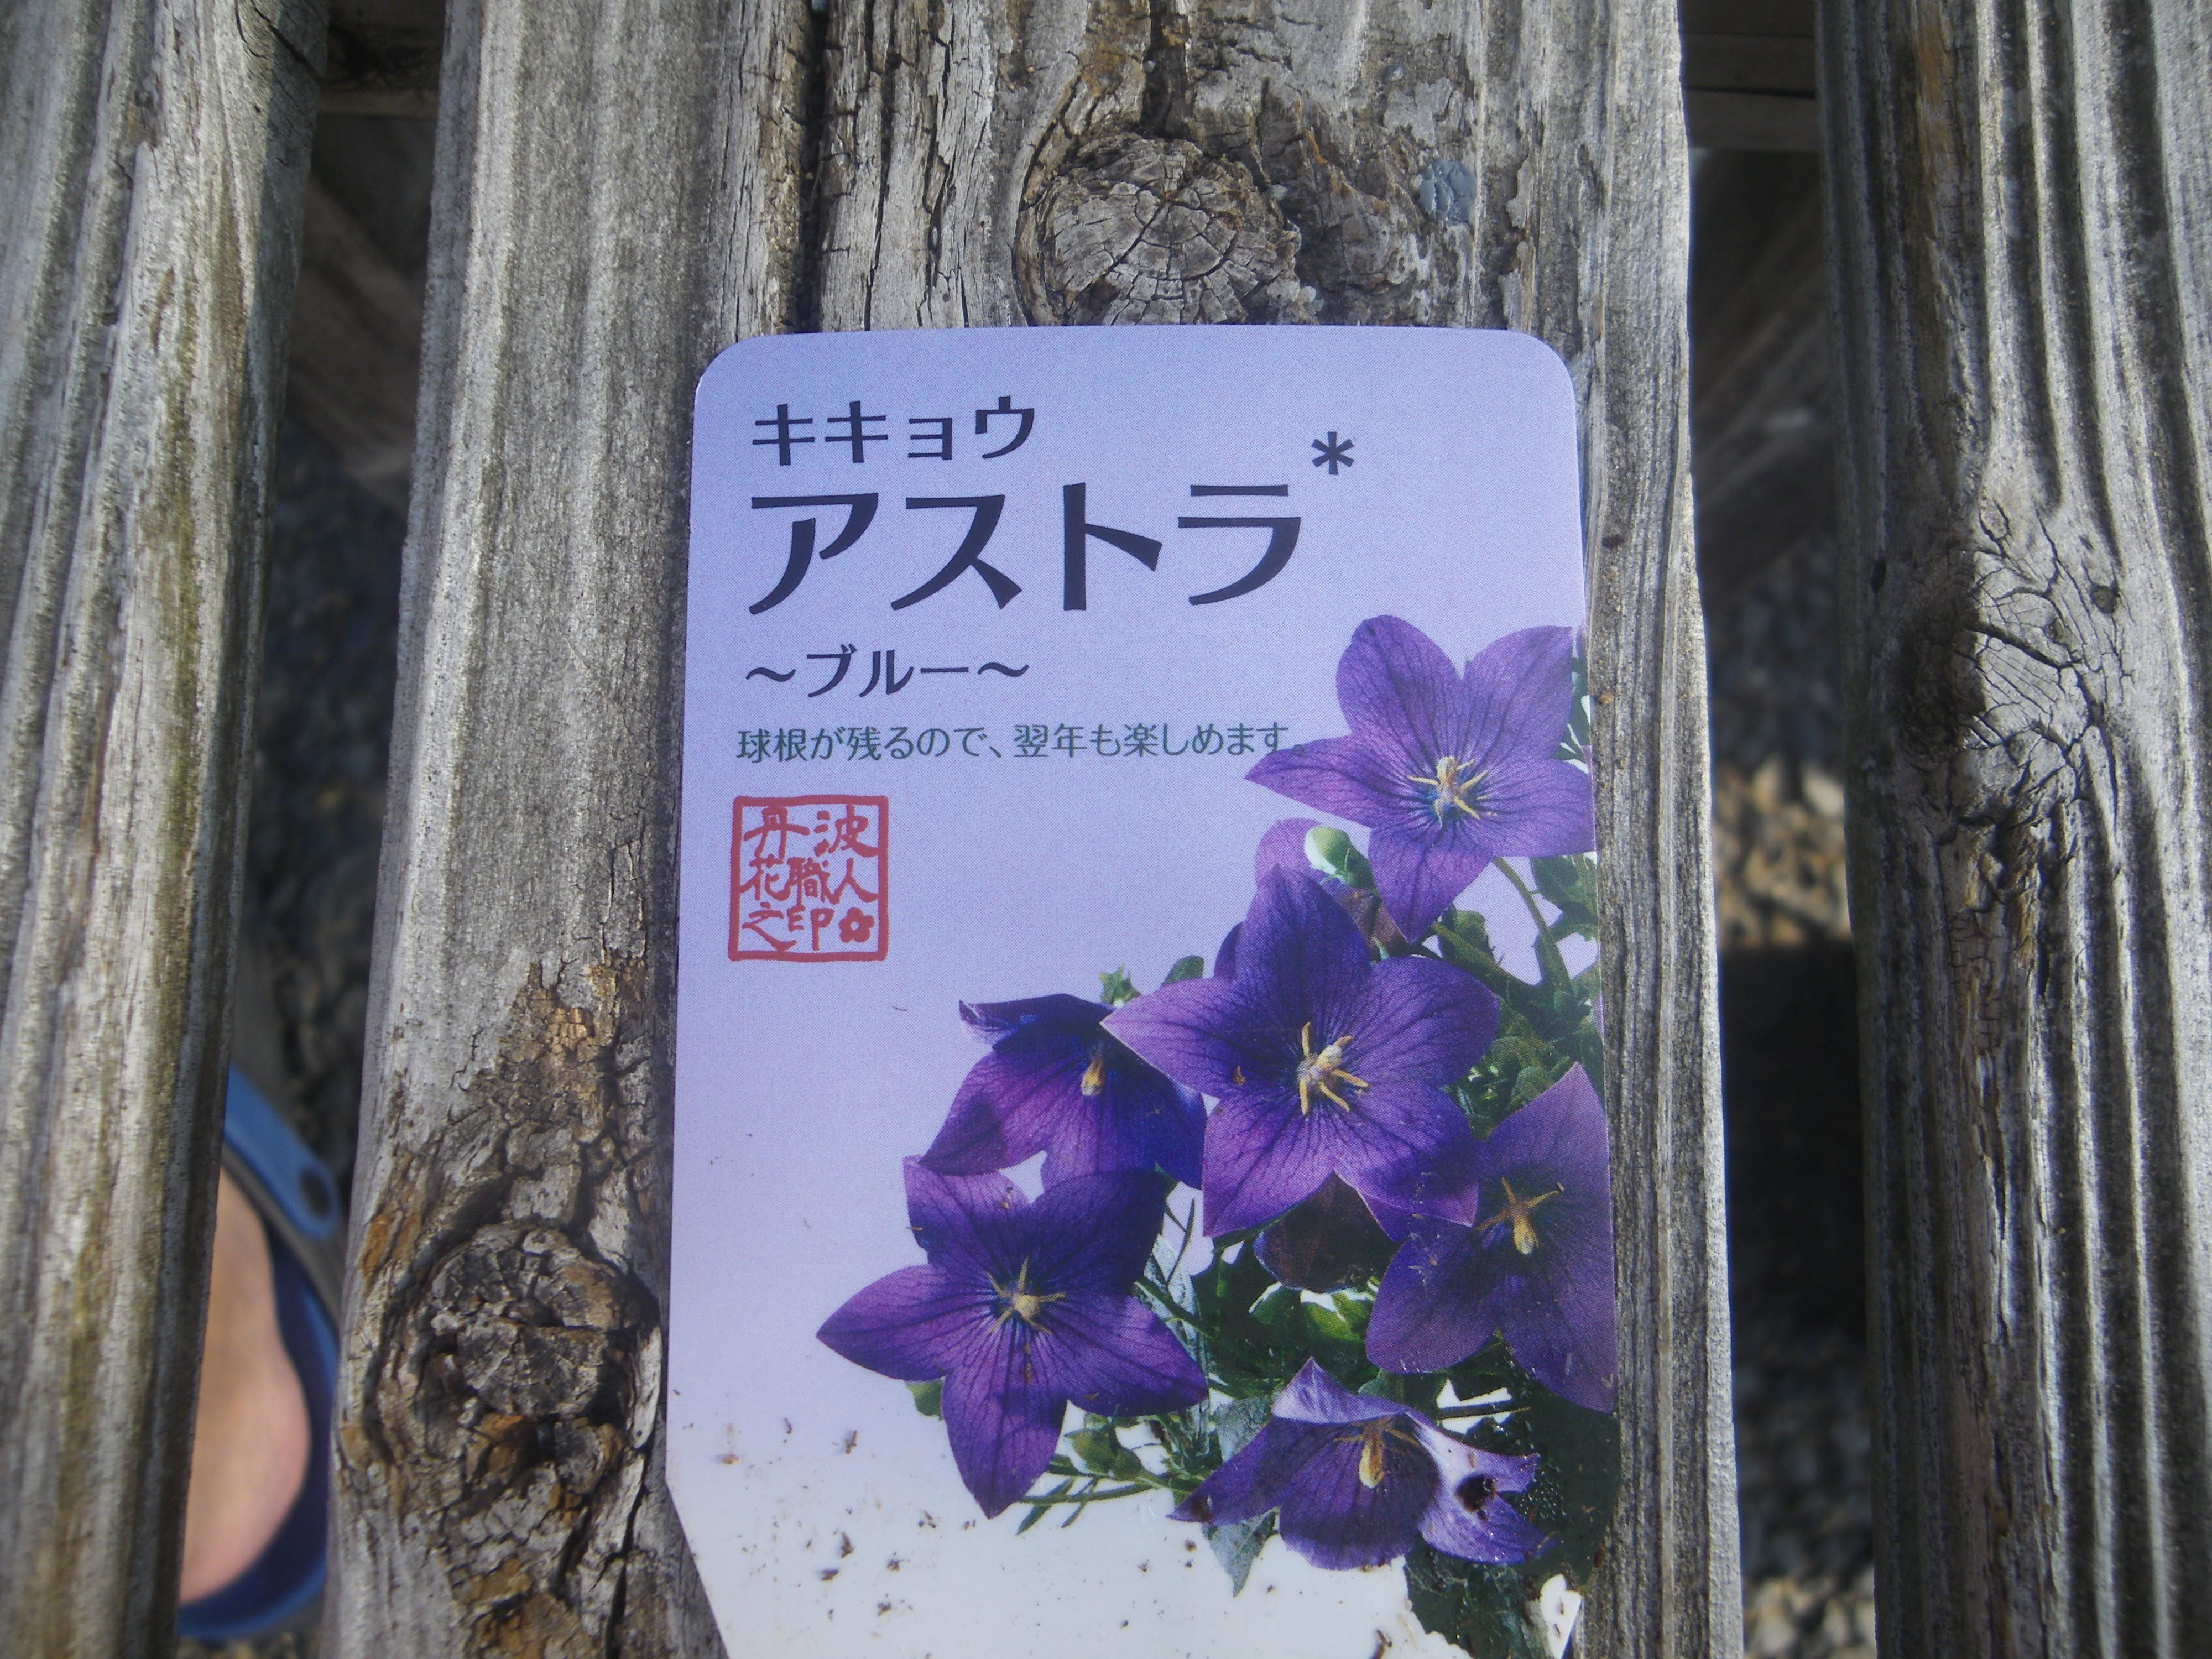 キキョウ 桔梗 の育て方 小さな鉢植えで紫色の美しい花を楽しむ メダカの大工